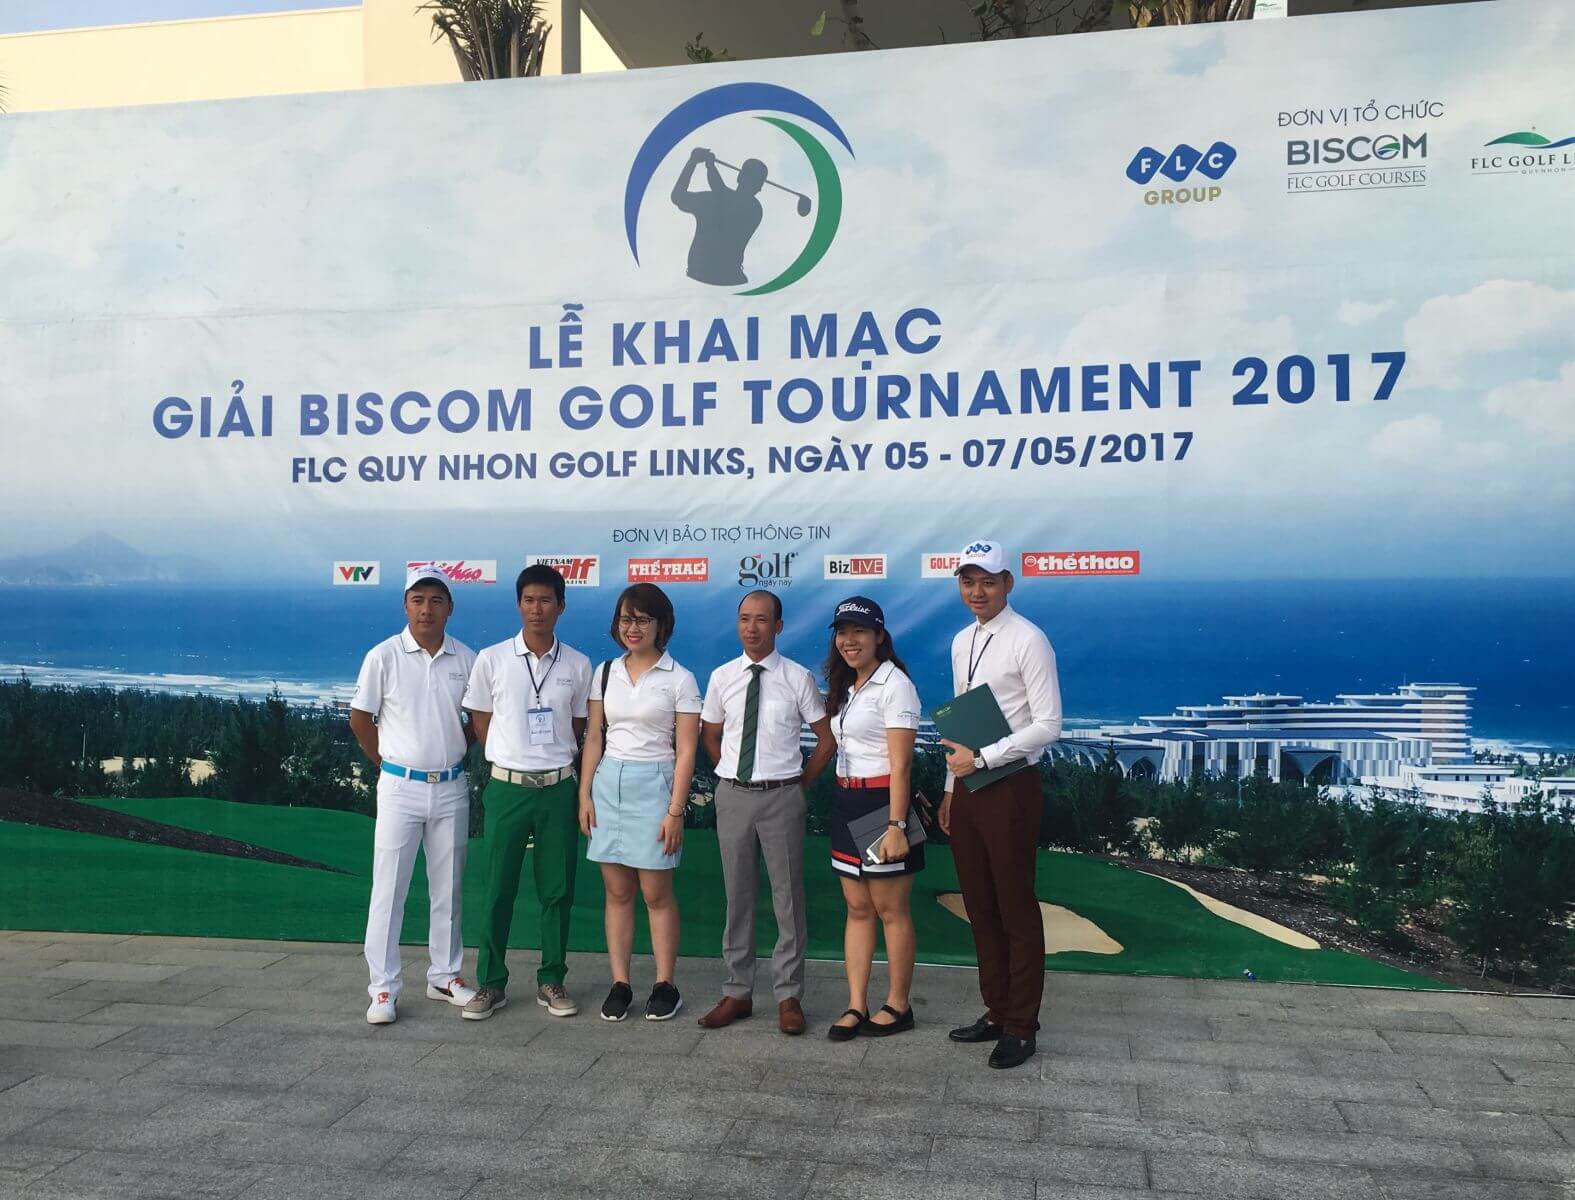 Giải Biscom 2017 chào sân với gần 700 golfer tham gia tranh tài